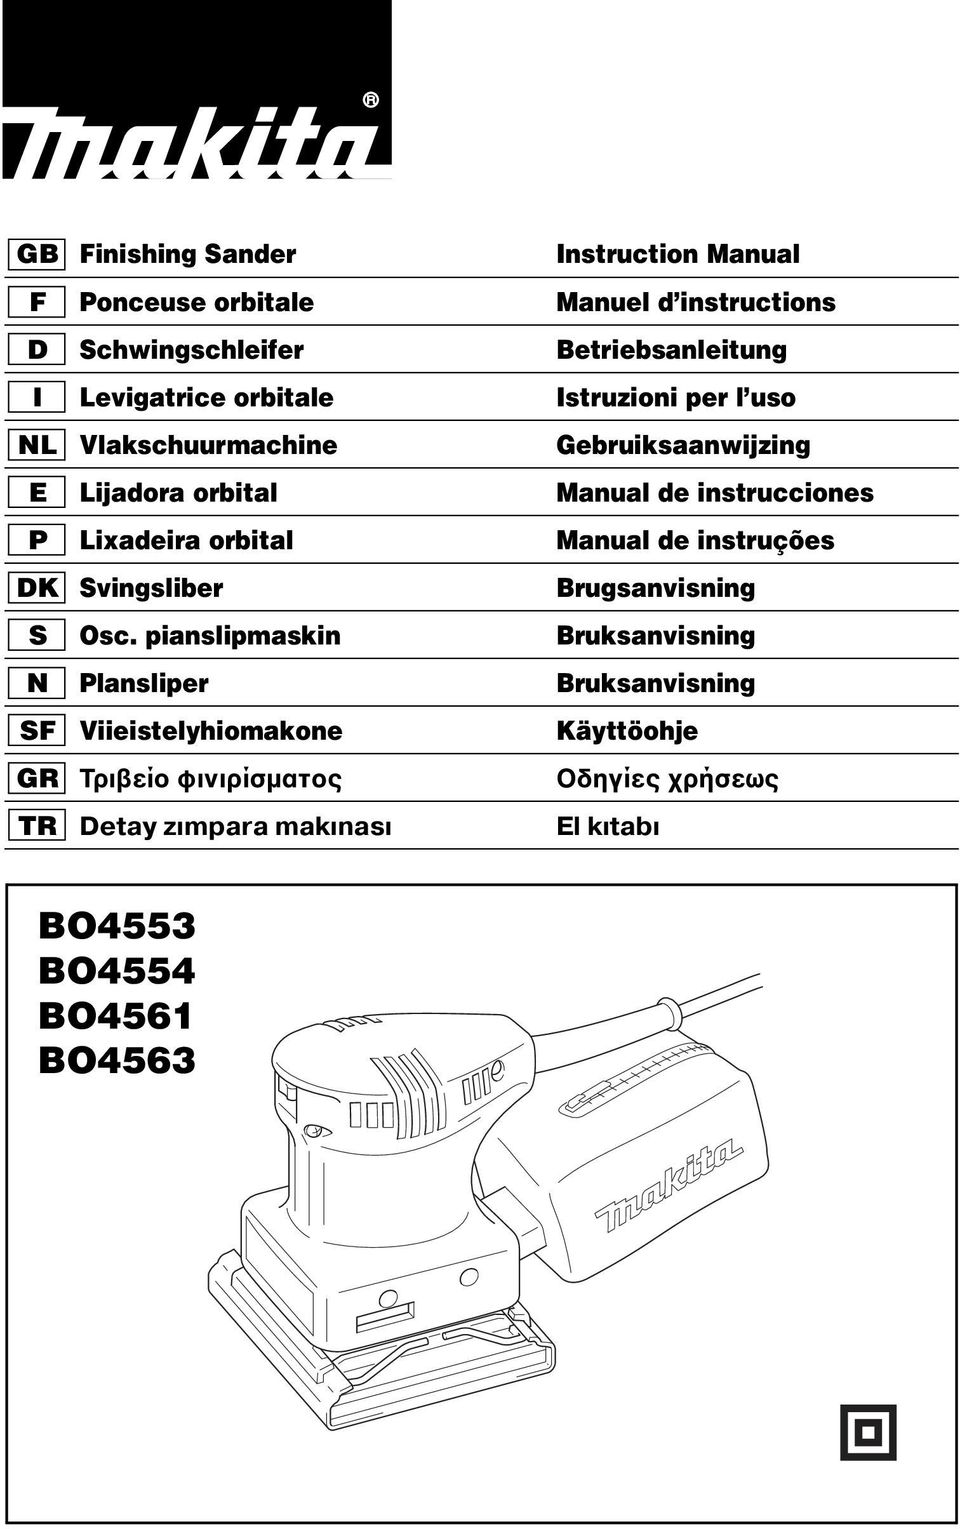 Lixadeira orbital Manual de instruções DK Svingsliber Brugsanvisning S Osc.